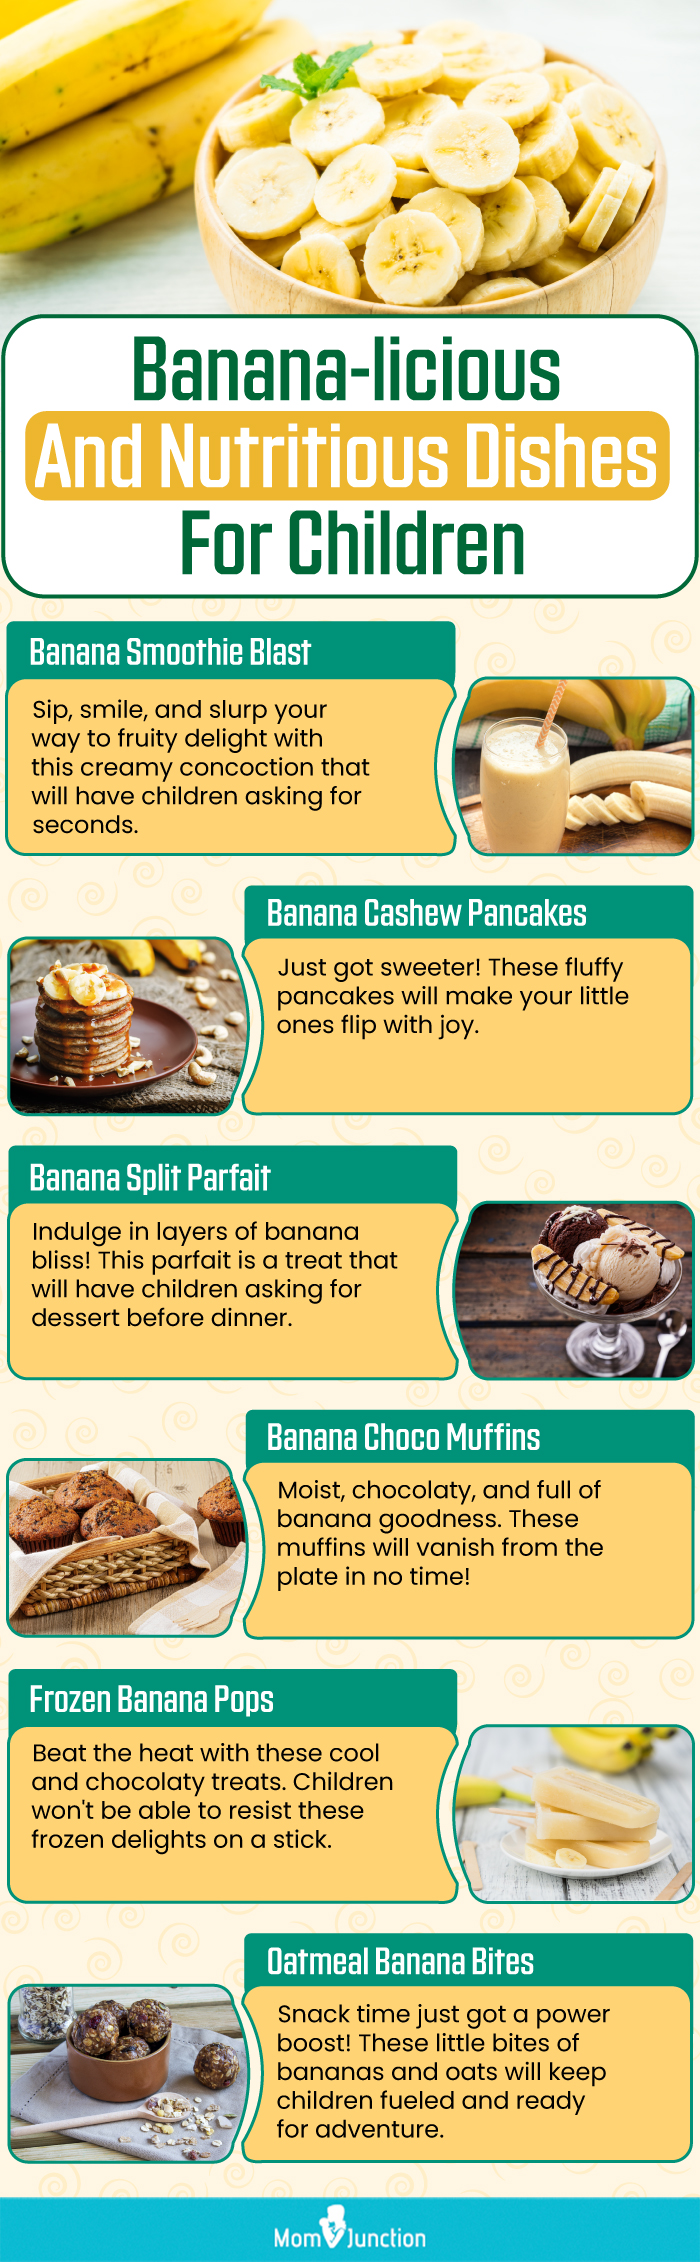 香蕉美味又营养的儿童菜肴(信息图)